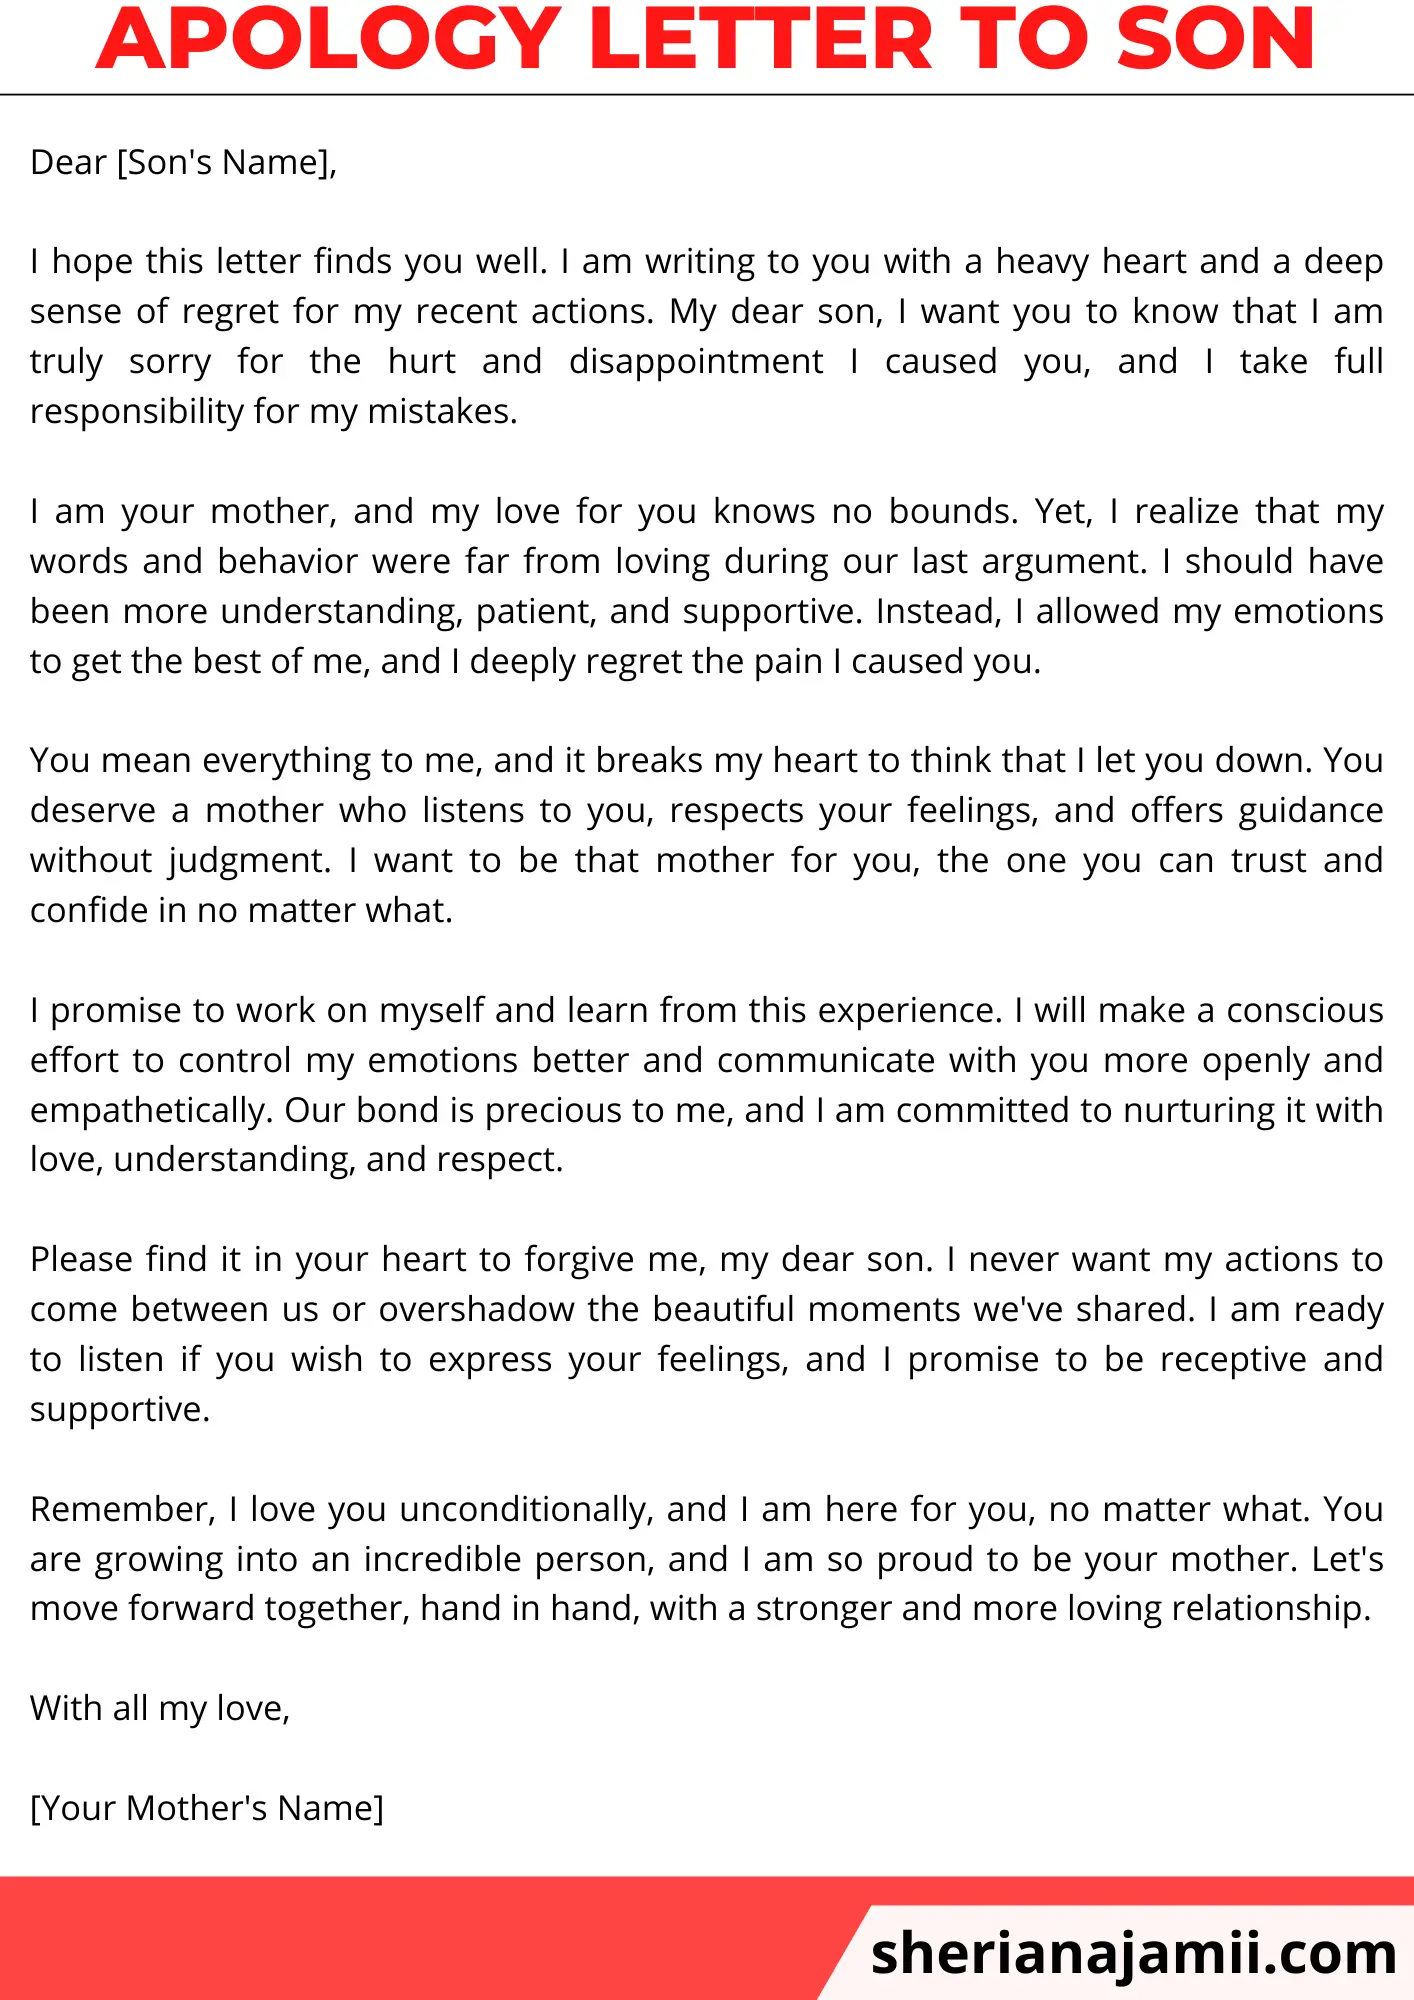 apology letter to son, apology letter to son from mom, apology letter to son dad